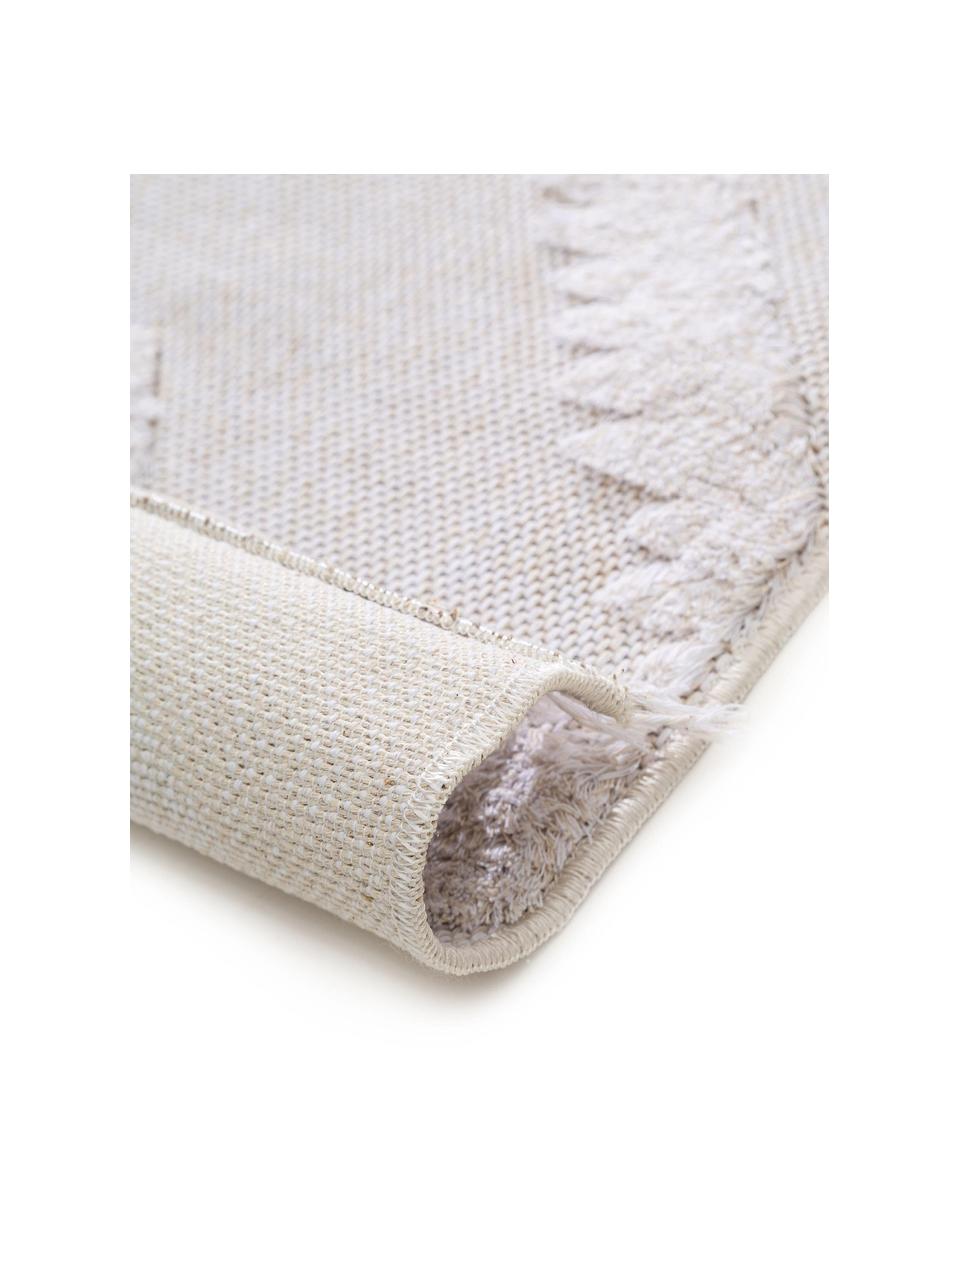 Tappeto in cotone lavato con motivo a rilievo Oslo, 100% cotone, Bianco crema, beige, Larg. 190 x Lung. 280 cm